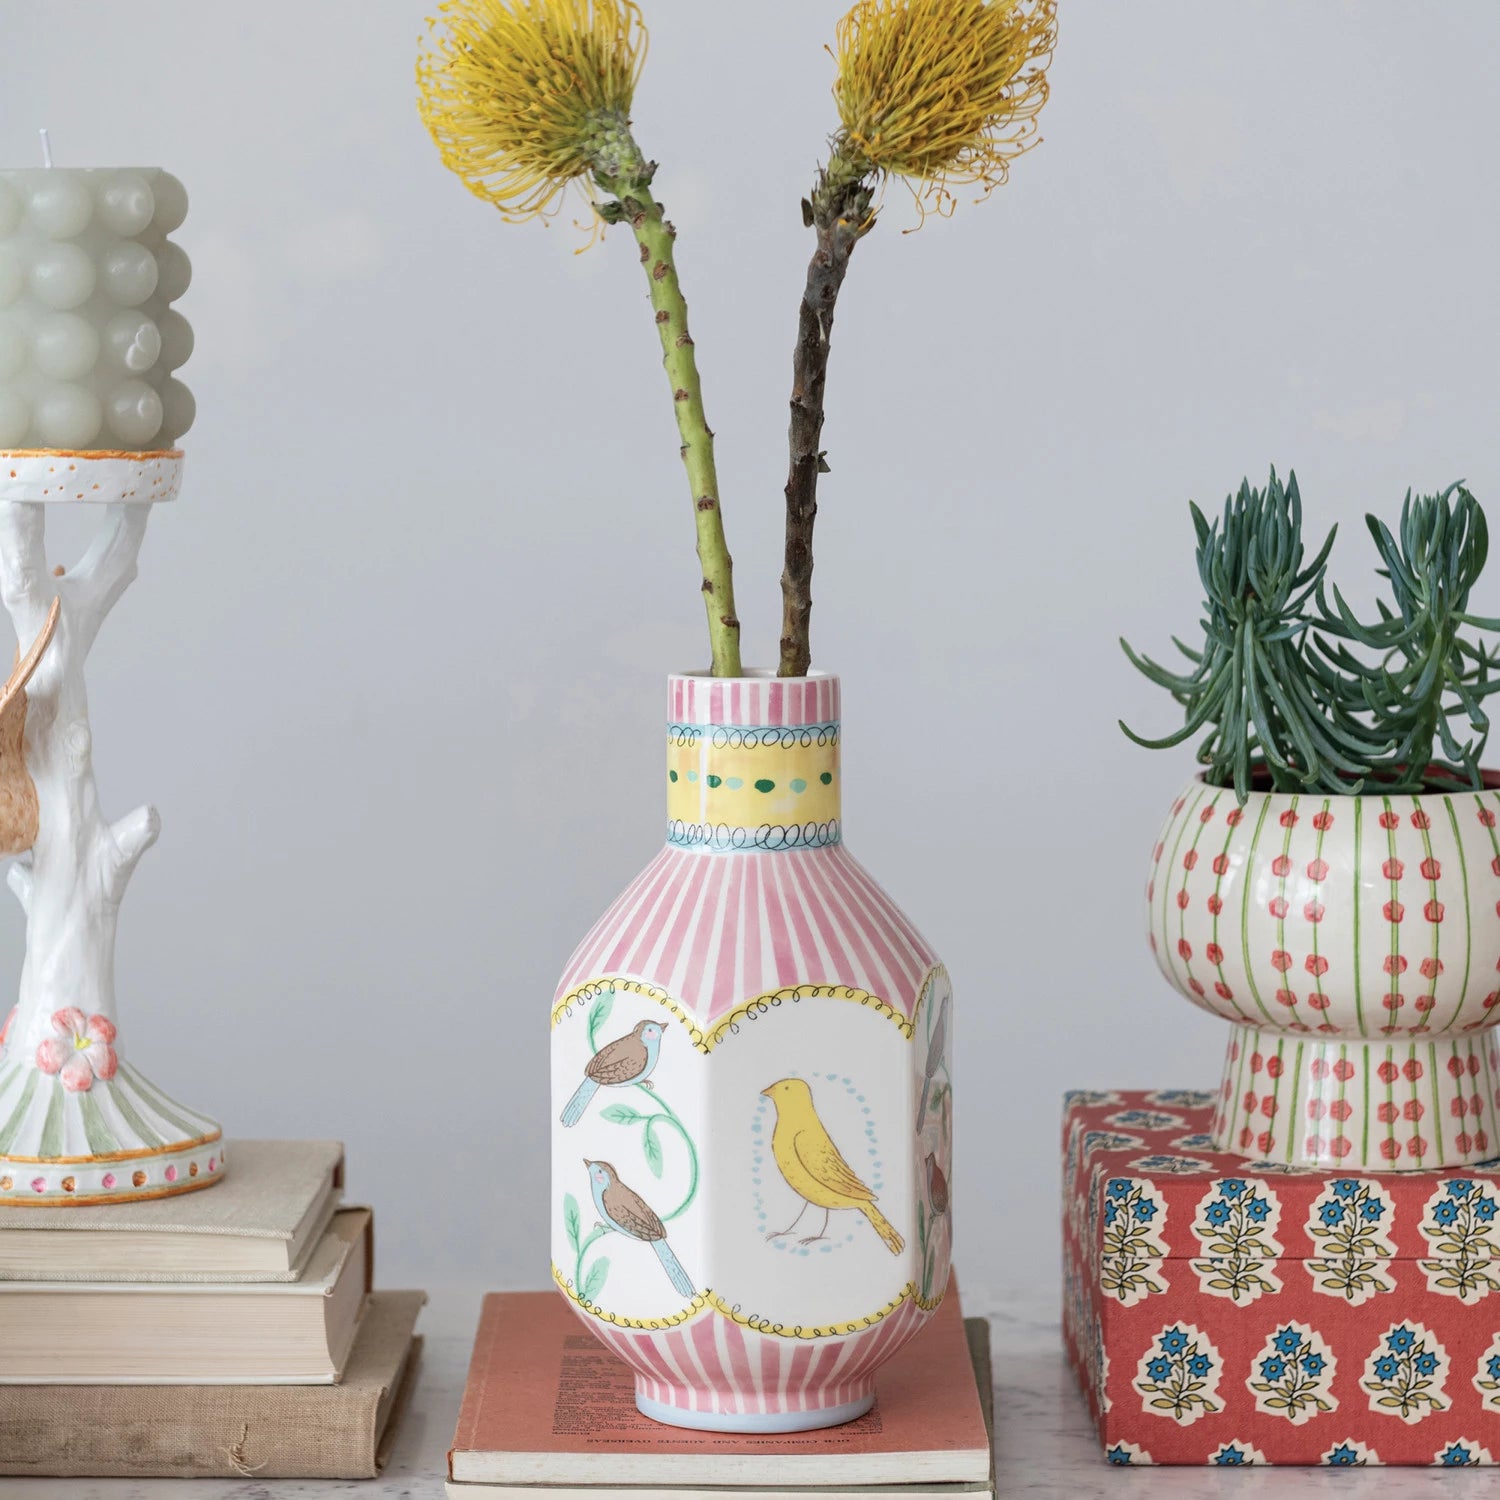 5-3/4"L x 5-1/4"W x 10-1/4"H Ceramic Vase w/ Birds, Multi Color